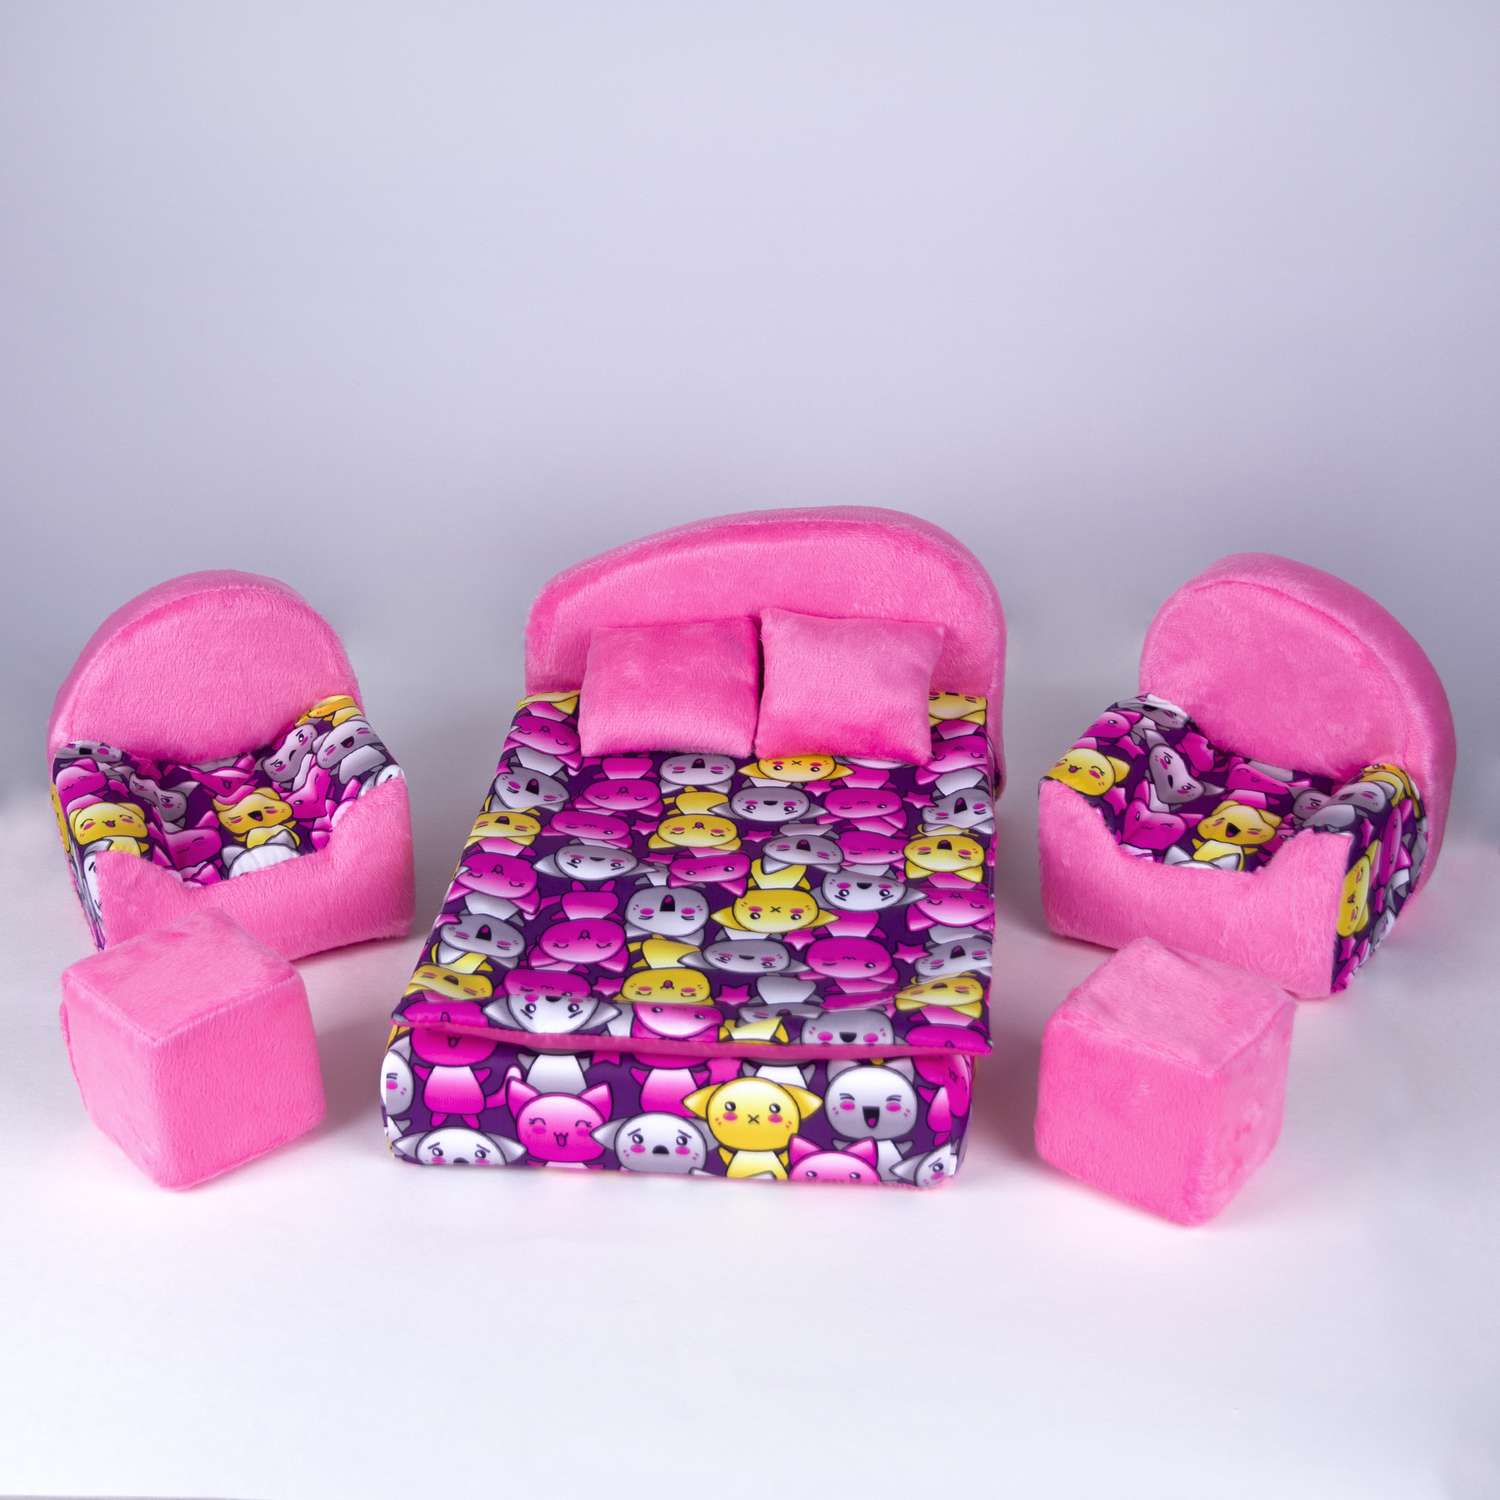 Набор мебели для кукол Belon familia кровать и 2 кресла/ принт хор котят с малиновым плюшем НМ-003/2-33 - фото 1